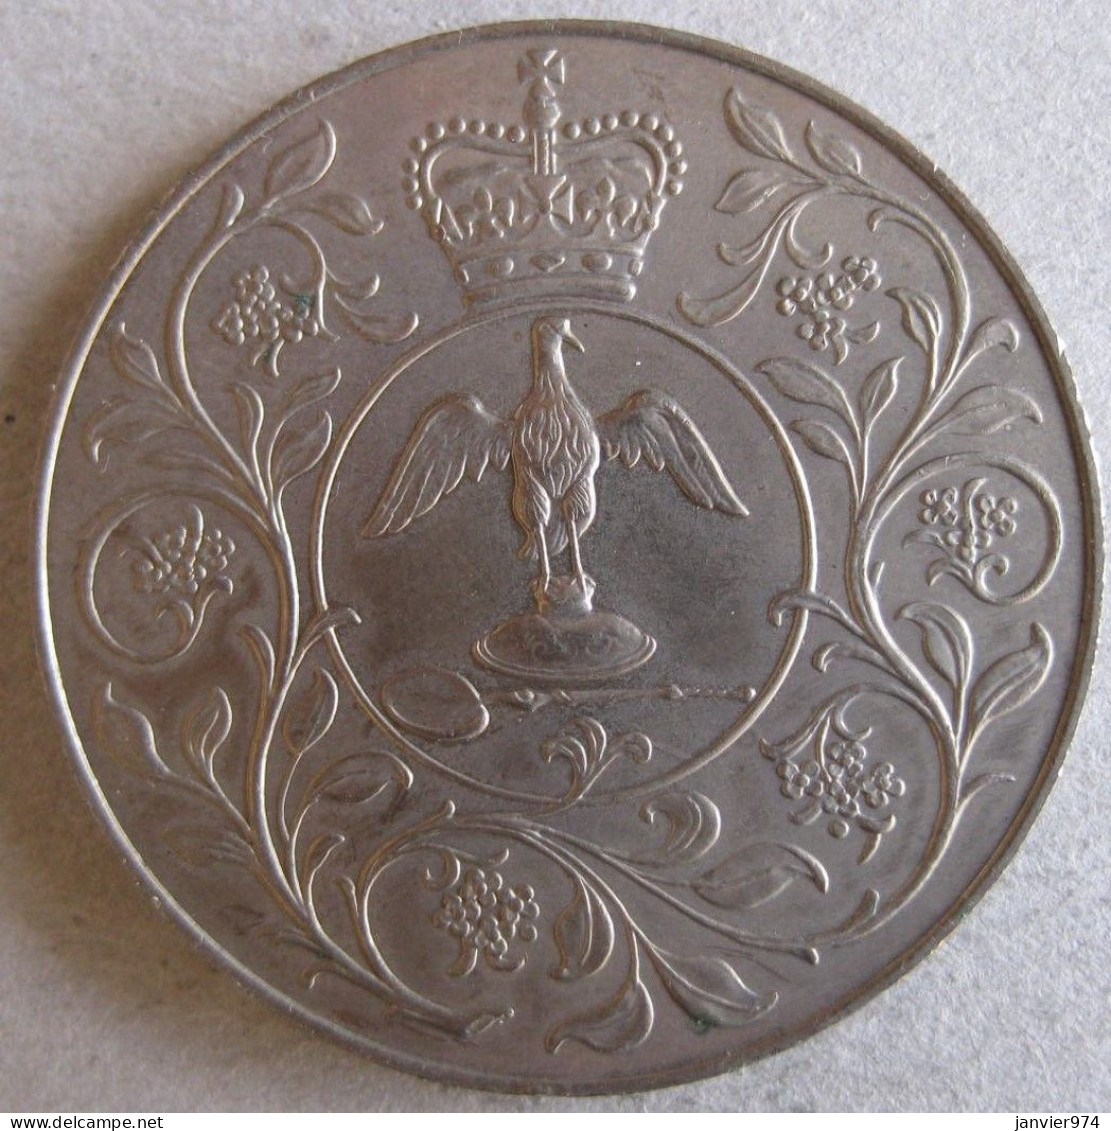 Royaume Unie Médaille Elizabeth II 1977, Pour Son Jubilé D'argent De Règne , En Cupro Nickel. - Monarquía/ Nobleza